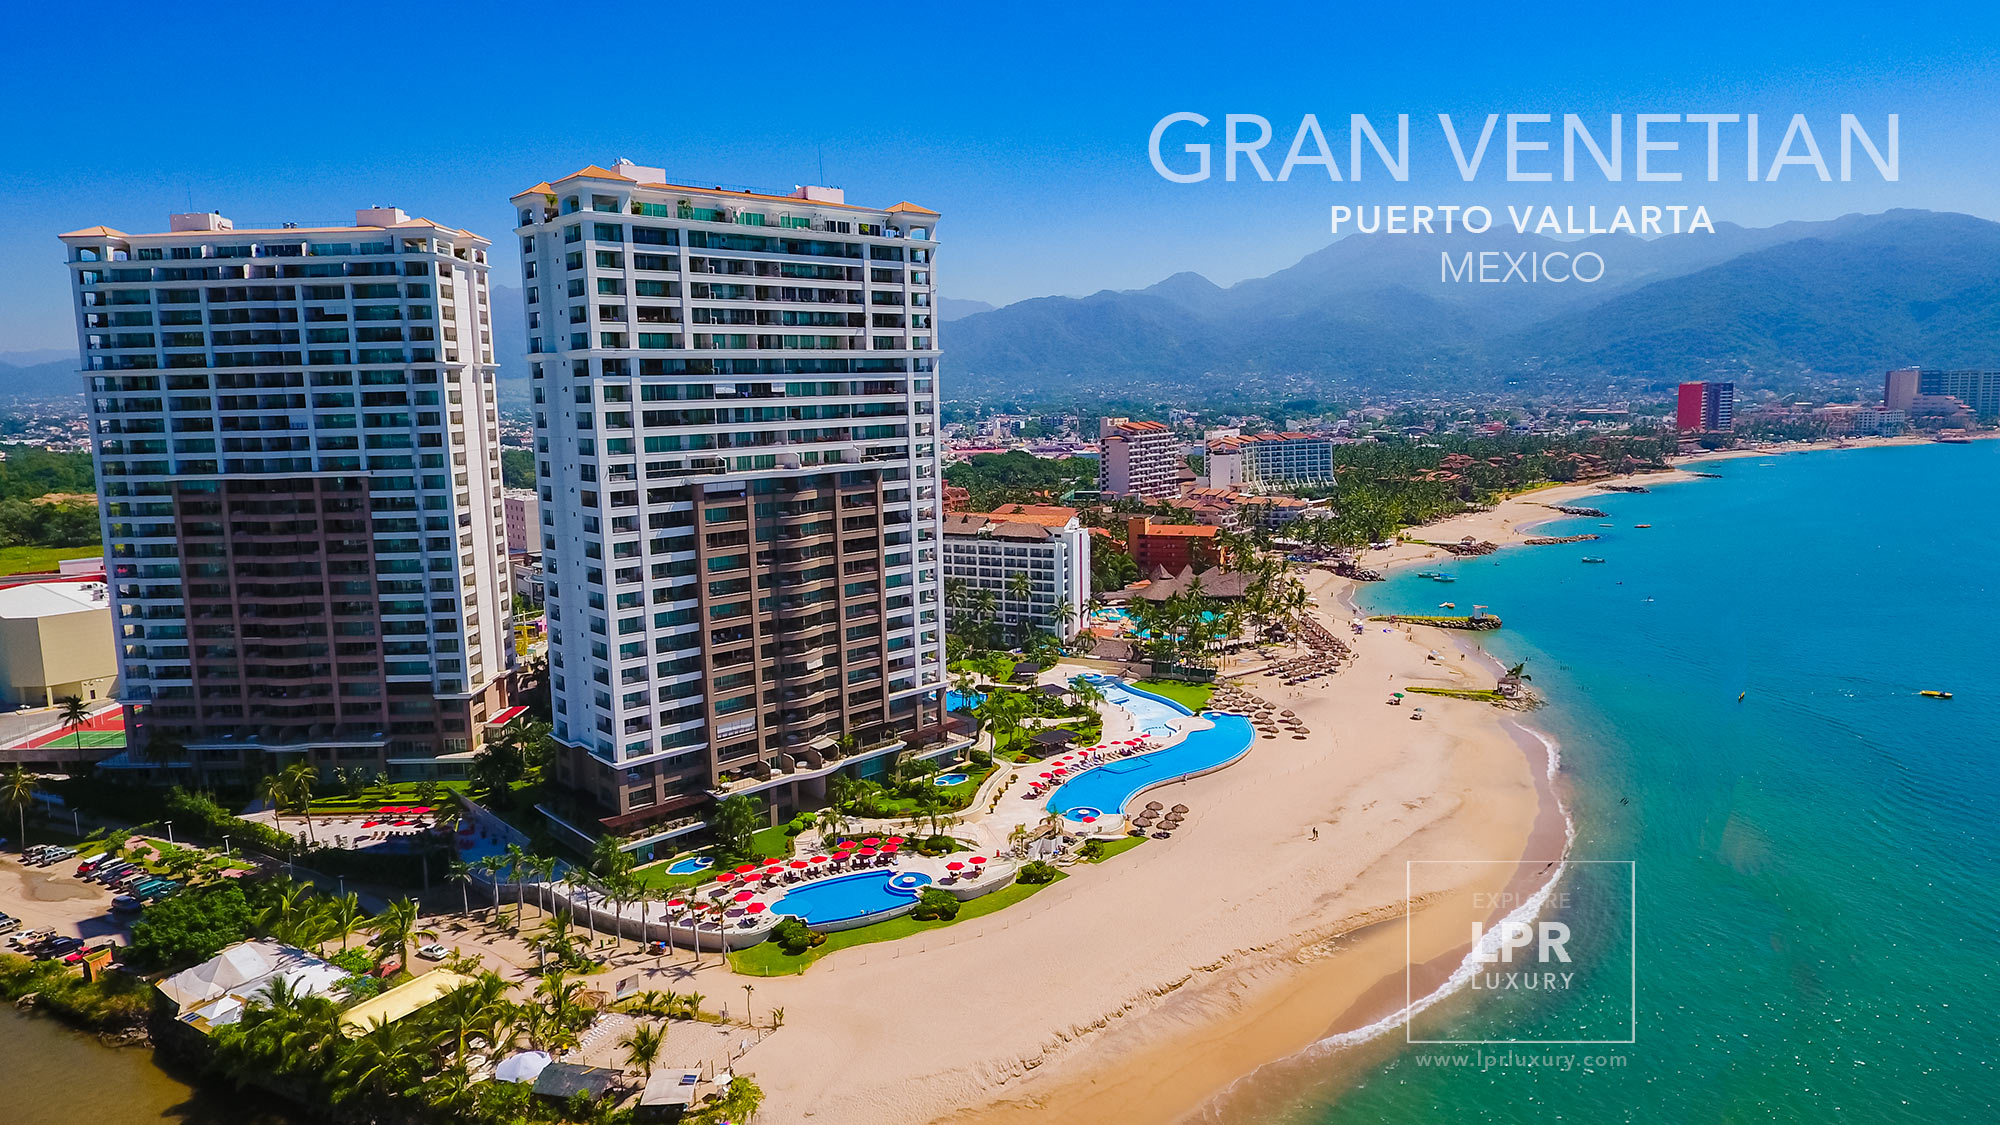 Grand Venetian - Puerto Vallarta vacation rental condos and real estate condominiums - Mexico